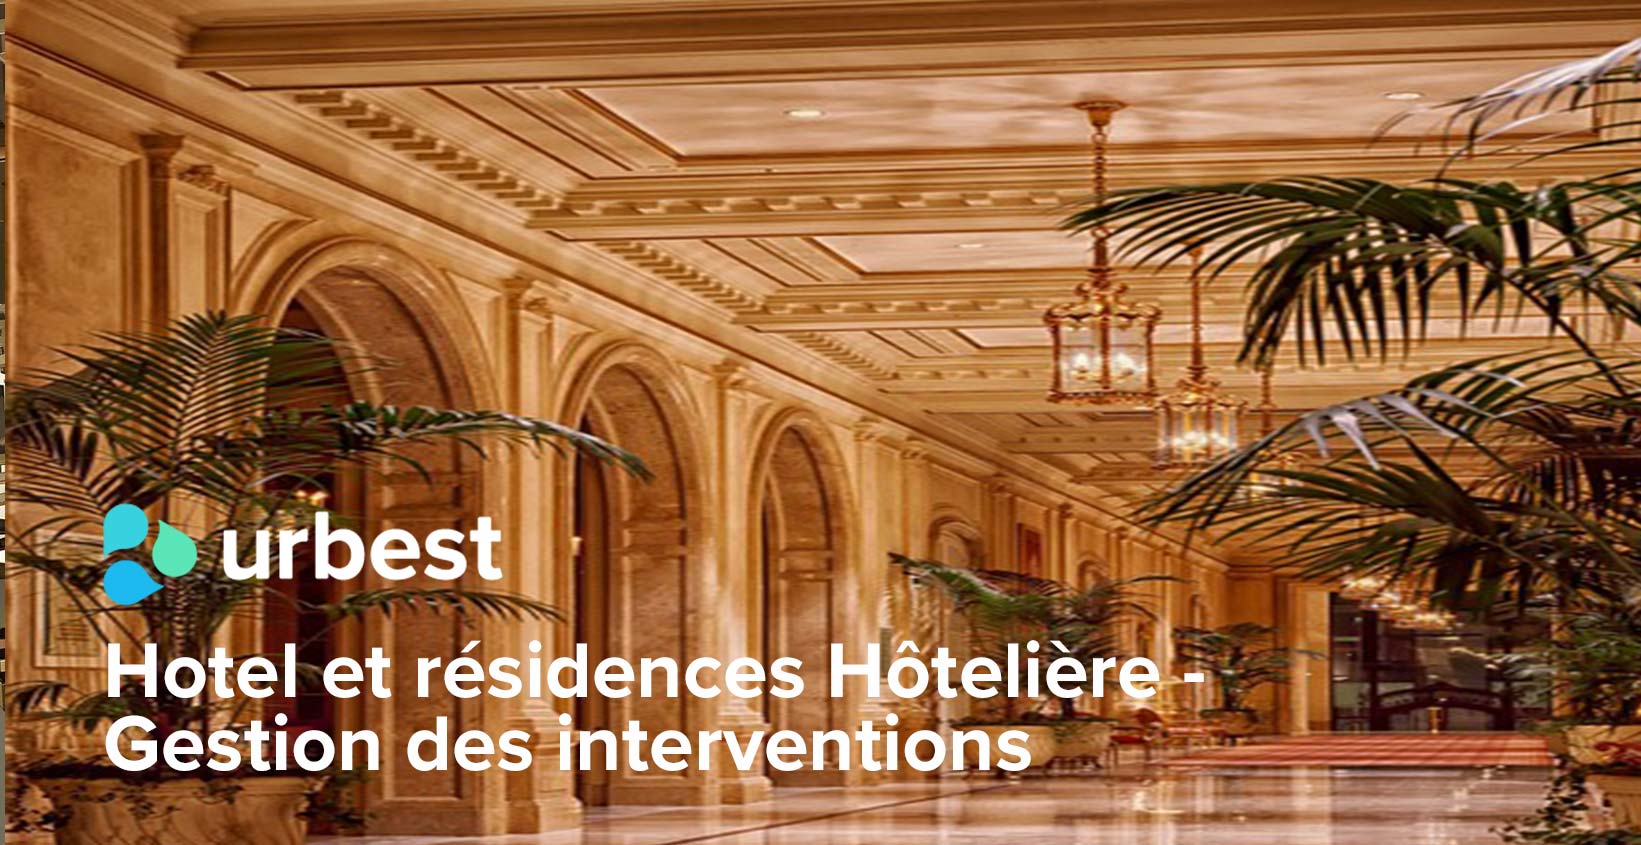 Hotel et résidences Hôtelière - Gestion des interventions